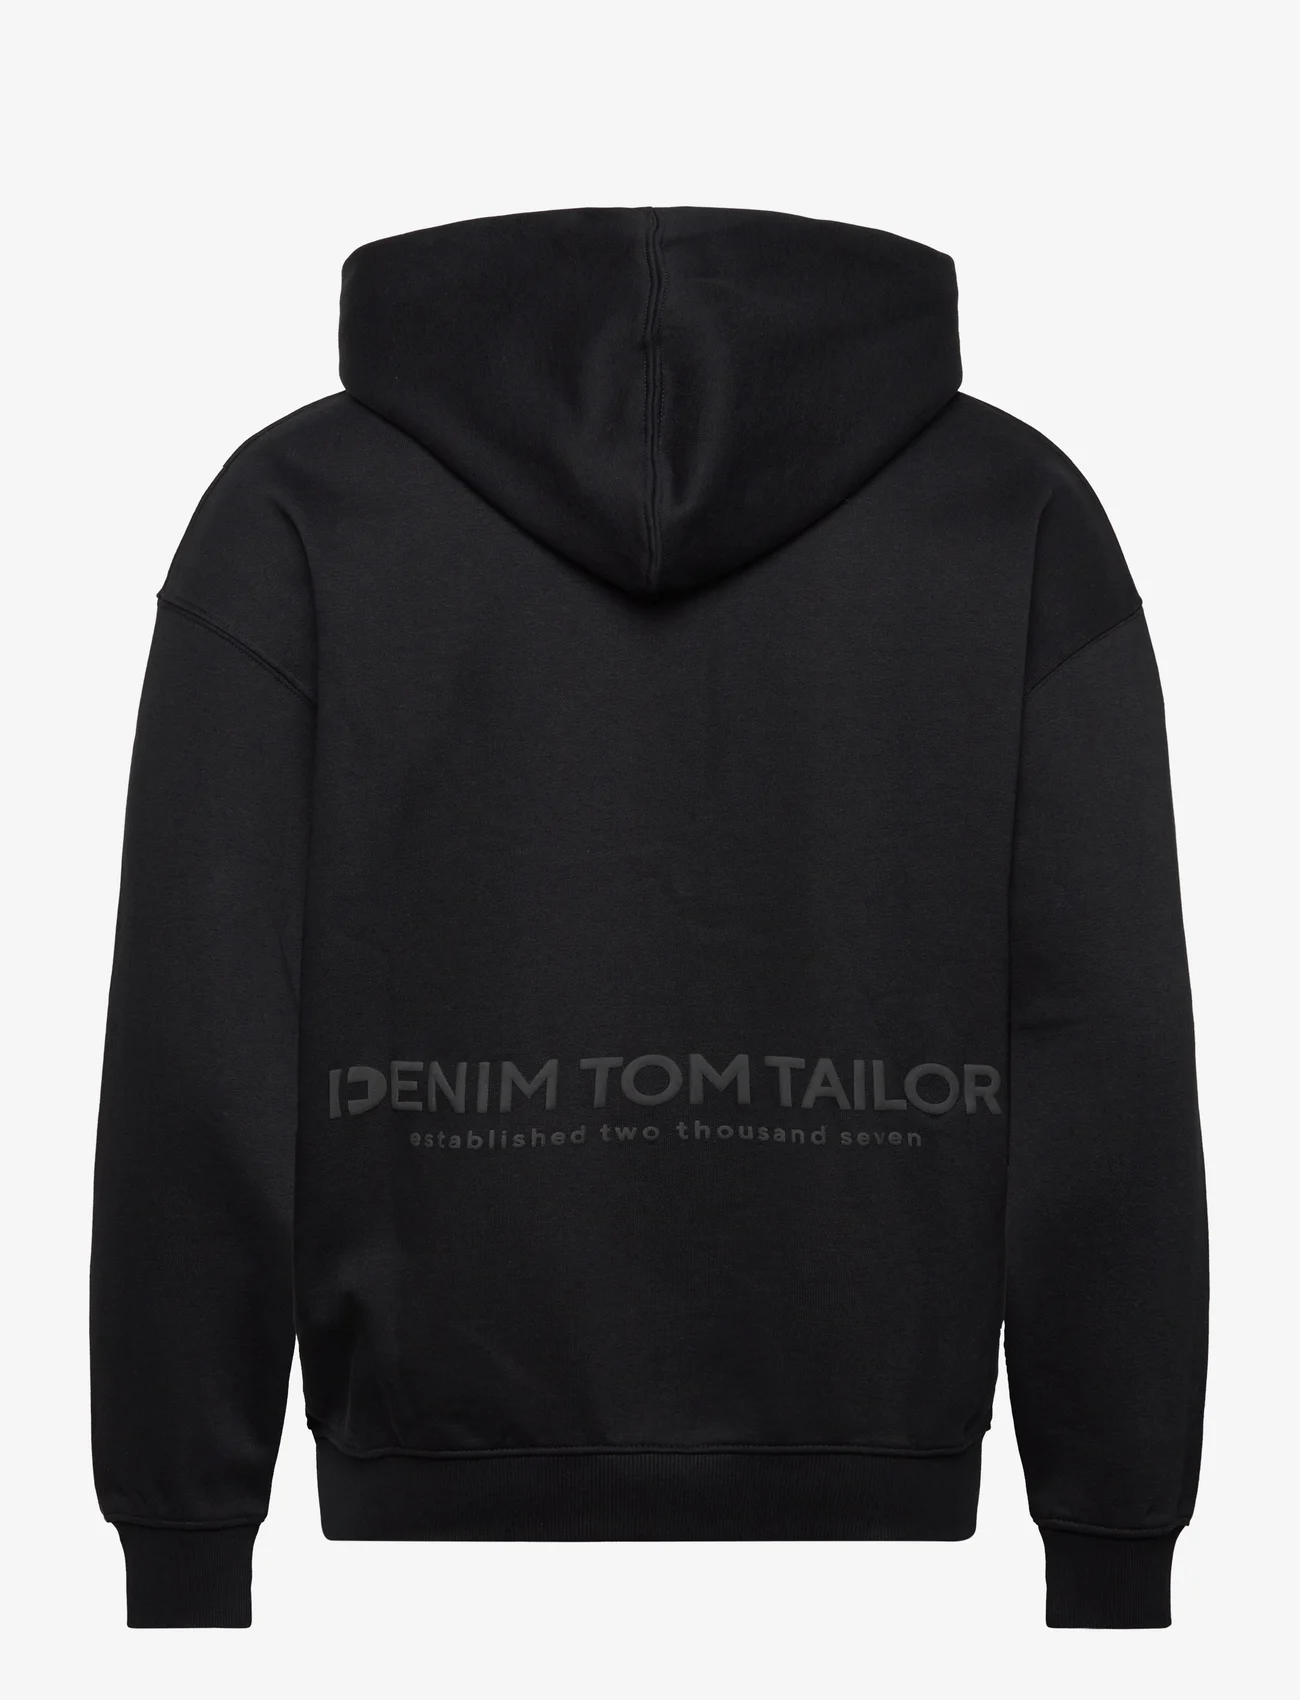 Tom Tailor - relaxed printed hoodie jacket - kapuzenpullover - black - 1